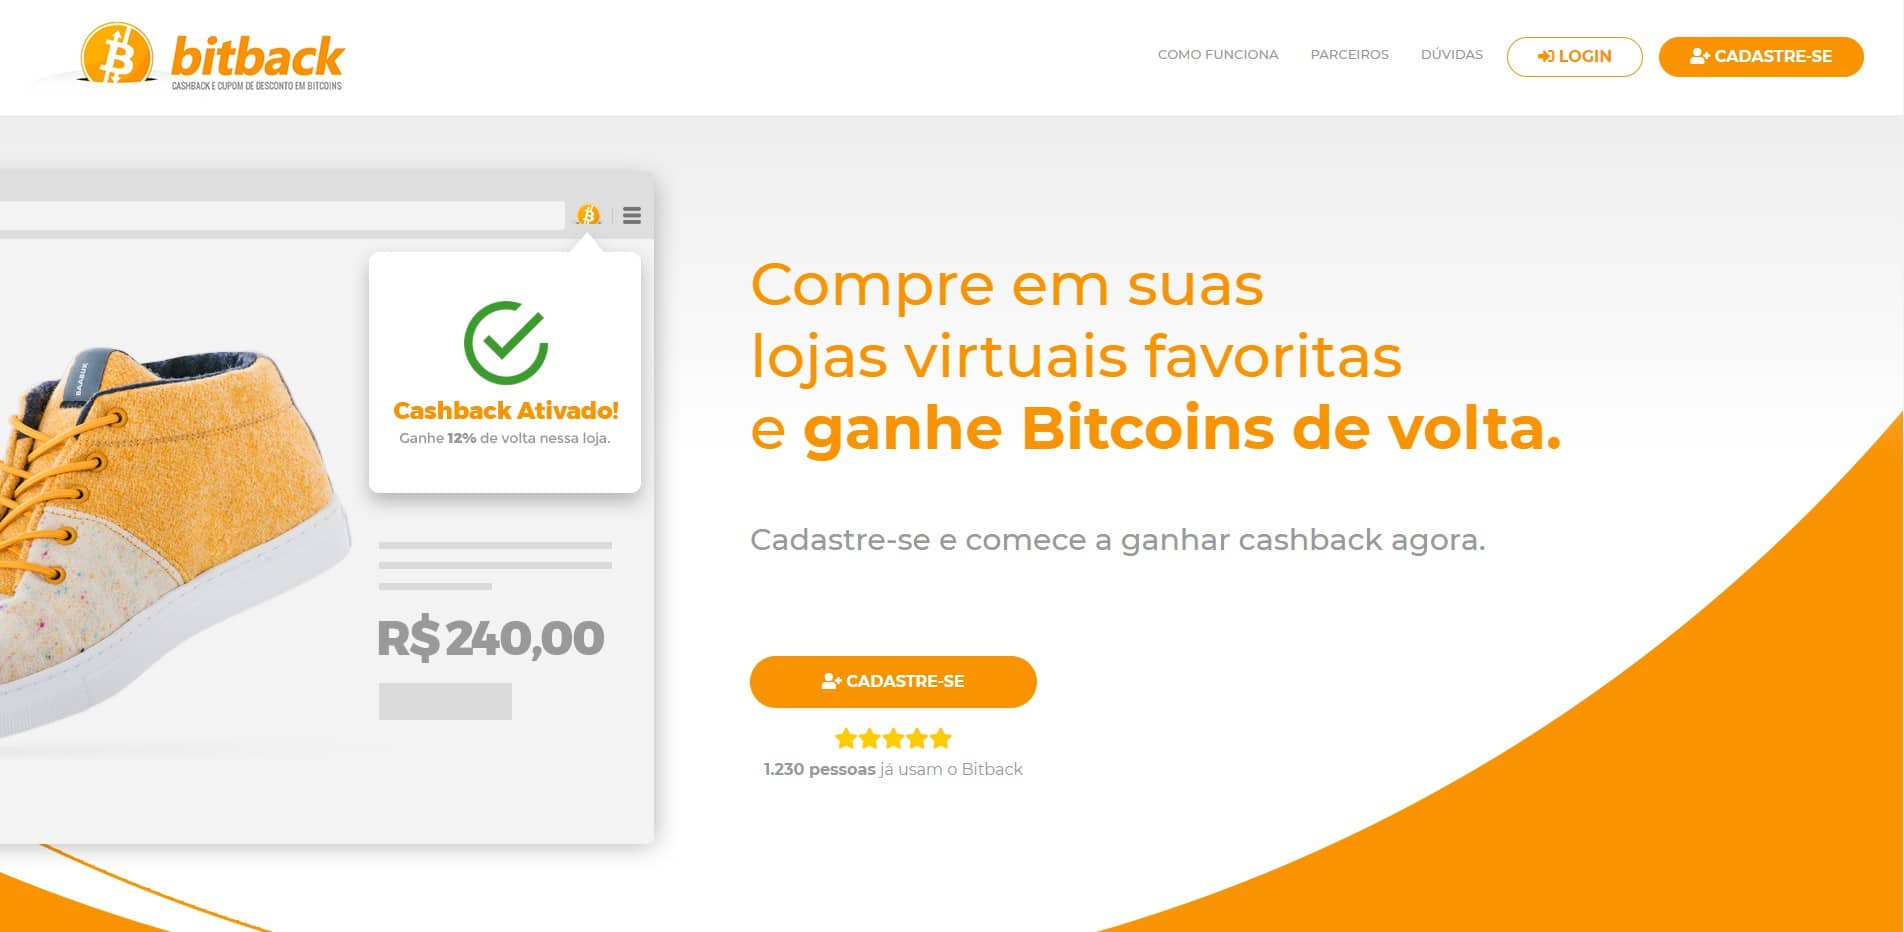 Plataforma oferece cashback em Bitcoin nas compras feitas em grandes lojas virtuais